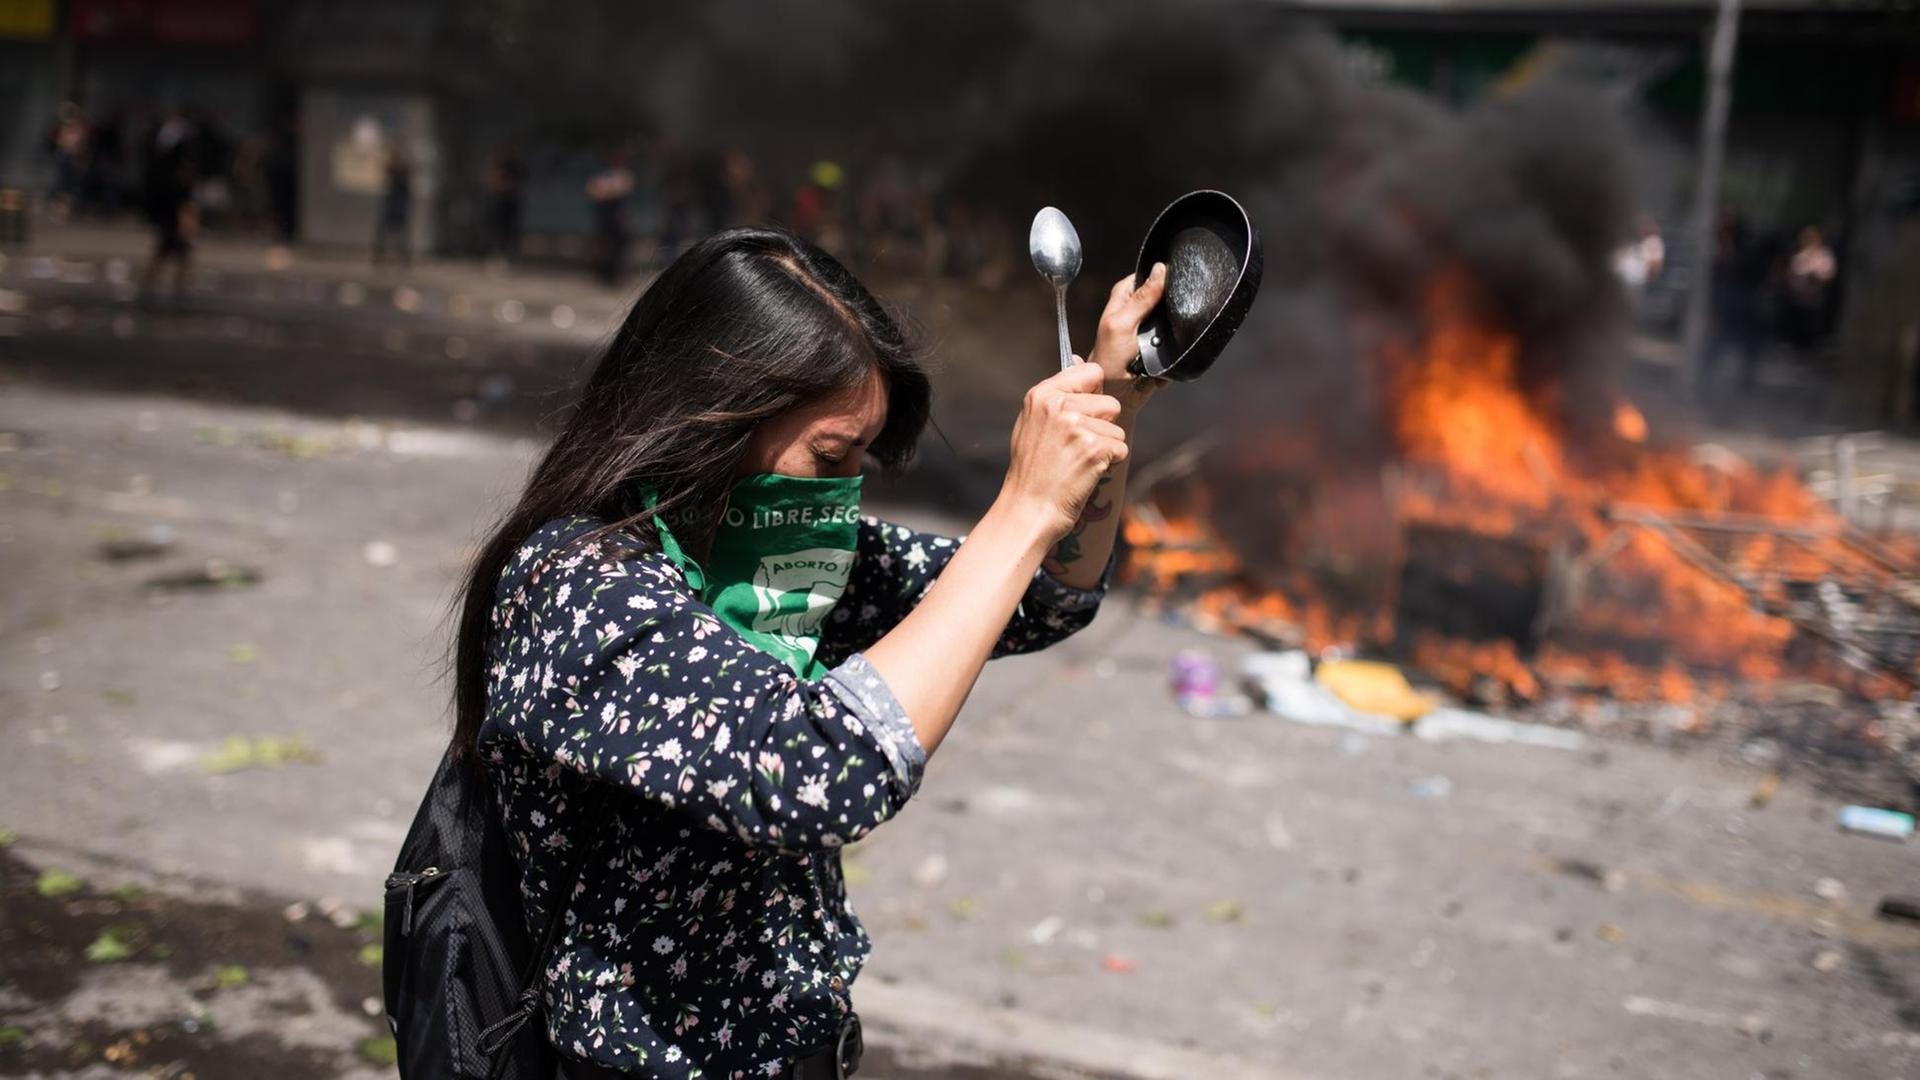 Proteste in Chile gegen Preiserhöhungen im öffentlichen Nahverkehr. Eine Frau schlägt auf ein Gefäß, im Hintergrund brennender Müll auf der Straße.